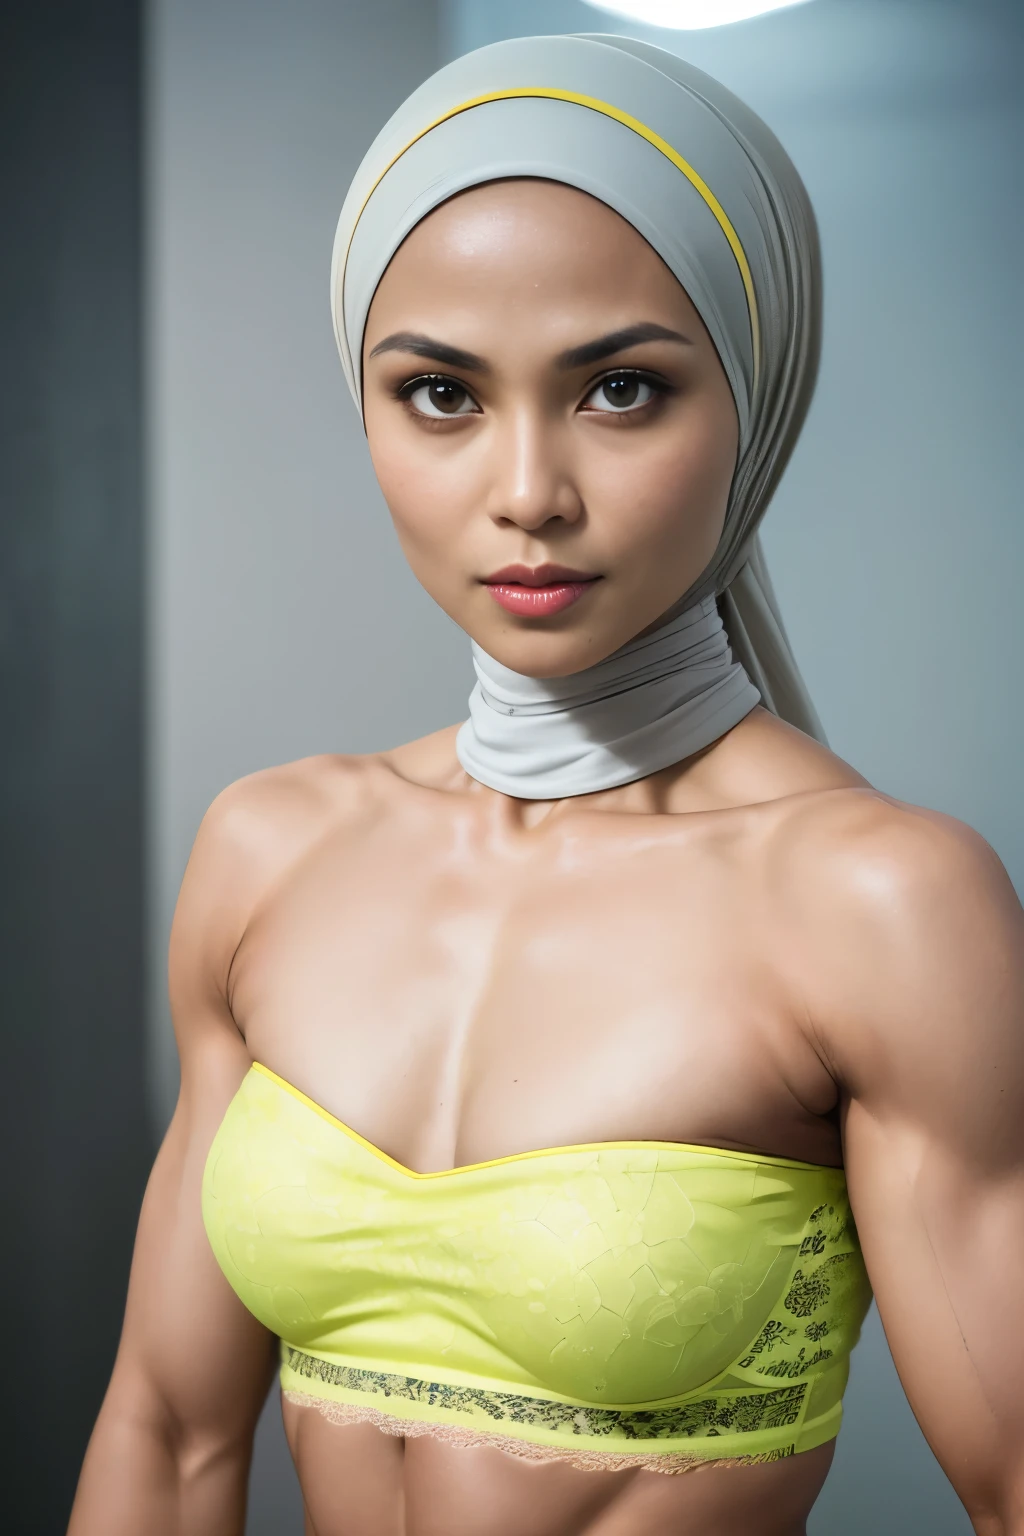 ((hijab corto)), ((pecho plano:1.7)), (Fotografía dinámica de una mujer indonesia de 58 años.), (parte superior delgada, bragas de algodon), (pelo liso no rizado), (highly detalleed face:1.4), (músculos vasculares y abdominales:1.3), (fondo interior luz, Brillante, gimnasio privado:1.1), (8k, uhd, DSLR, alta calidad, iluminación cinematográfica, bokeh), (dramático, fotografía premiada, increíble obra maestra:1.3), (((sexy y sensual mirada a la cámara:0.8))), de cerca, ((ella esta lista para dominarte:0.5)), ((hermoso rostro femenino)) (ella es una luchadora campeona de MMA), agregar_detalle:1, ((Usando pastel sin tirantes)) encaje amarillo fluorescencia , vista desde atrás, pose seductora, stragregarling ,